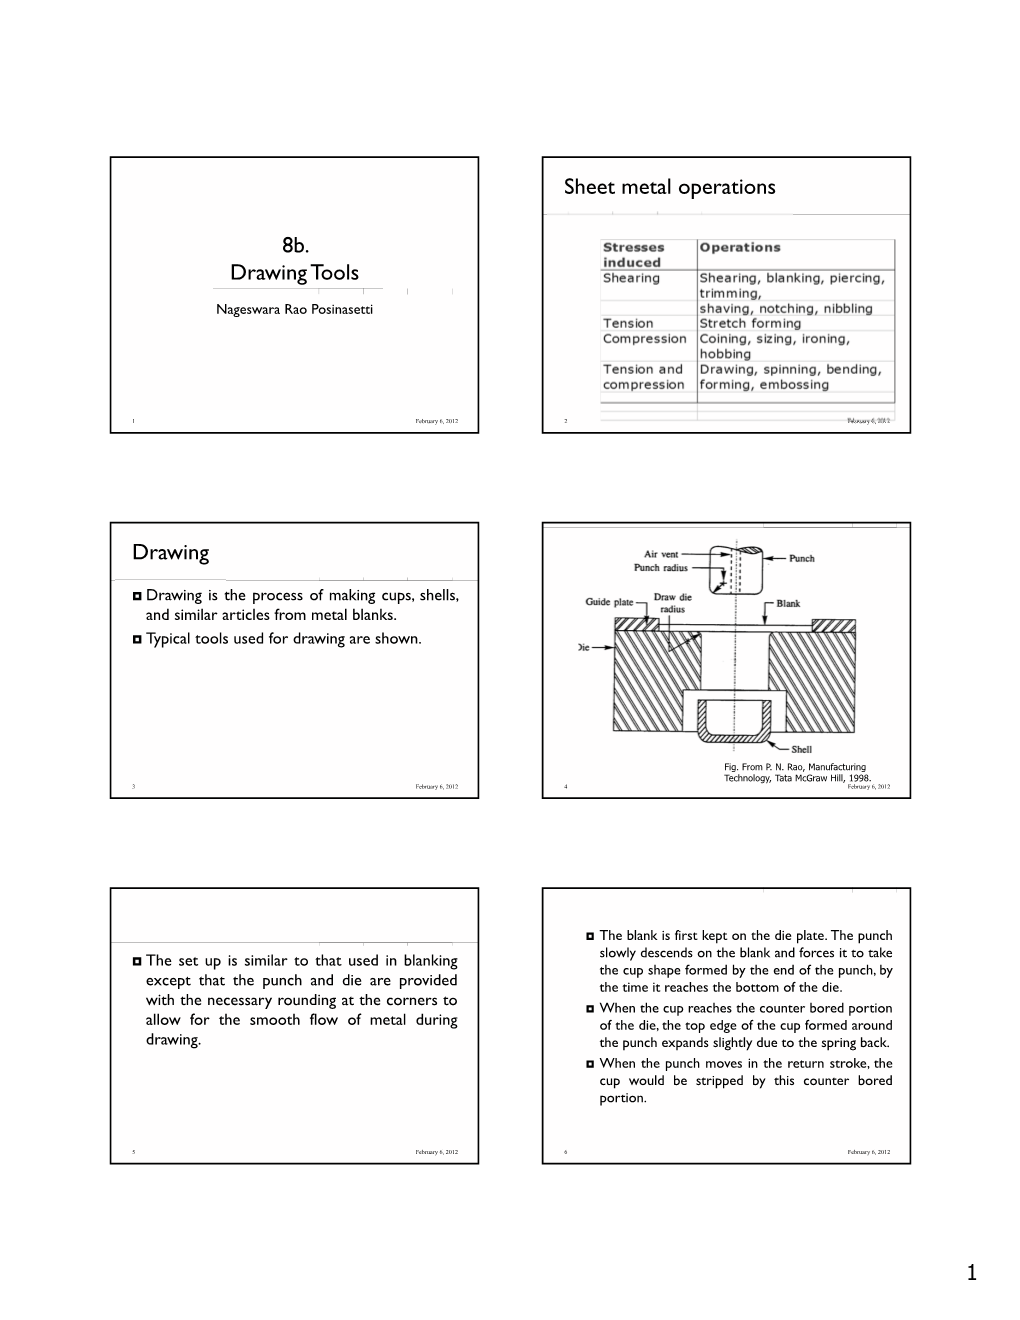 8B. Drawing Tools Sheet Metal Operations Drawing